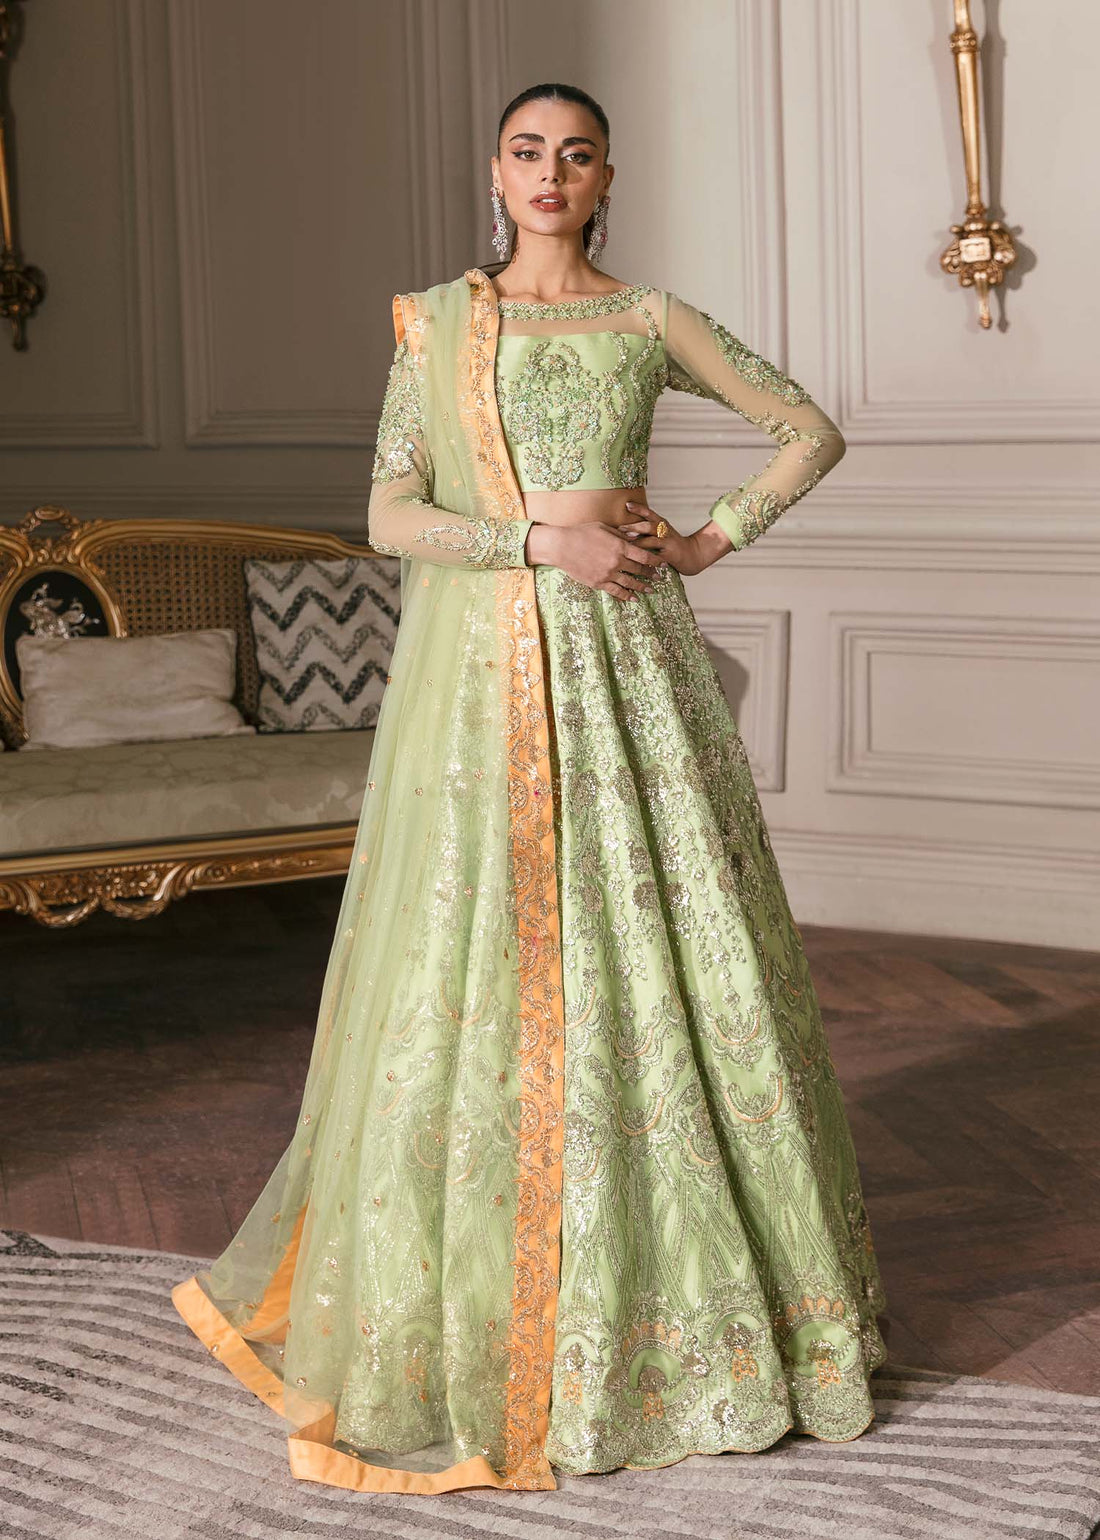 Waqas Shah | Malika - E - Elizabeth | DAISY - Khanumjan  Pakistani Clothes and Designer Dresses in UK, USA 